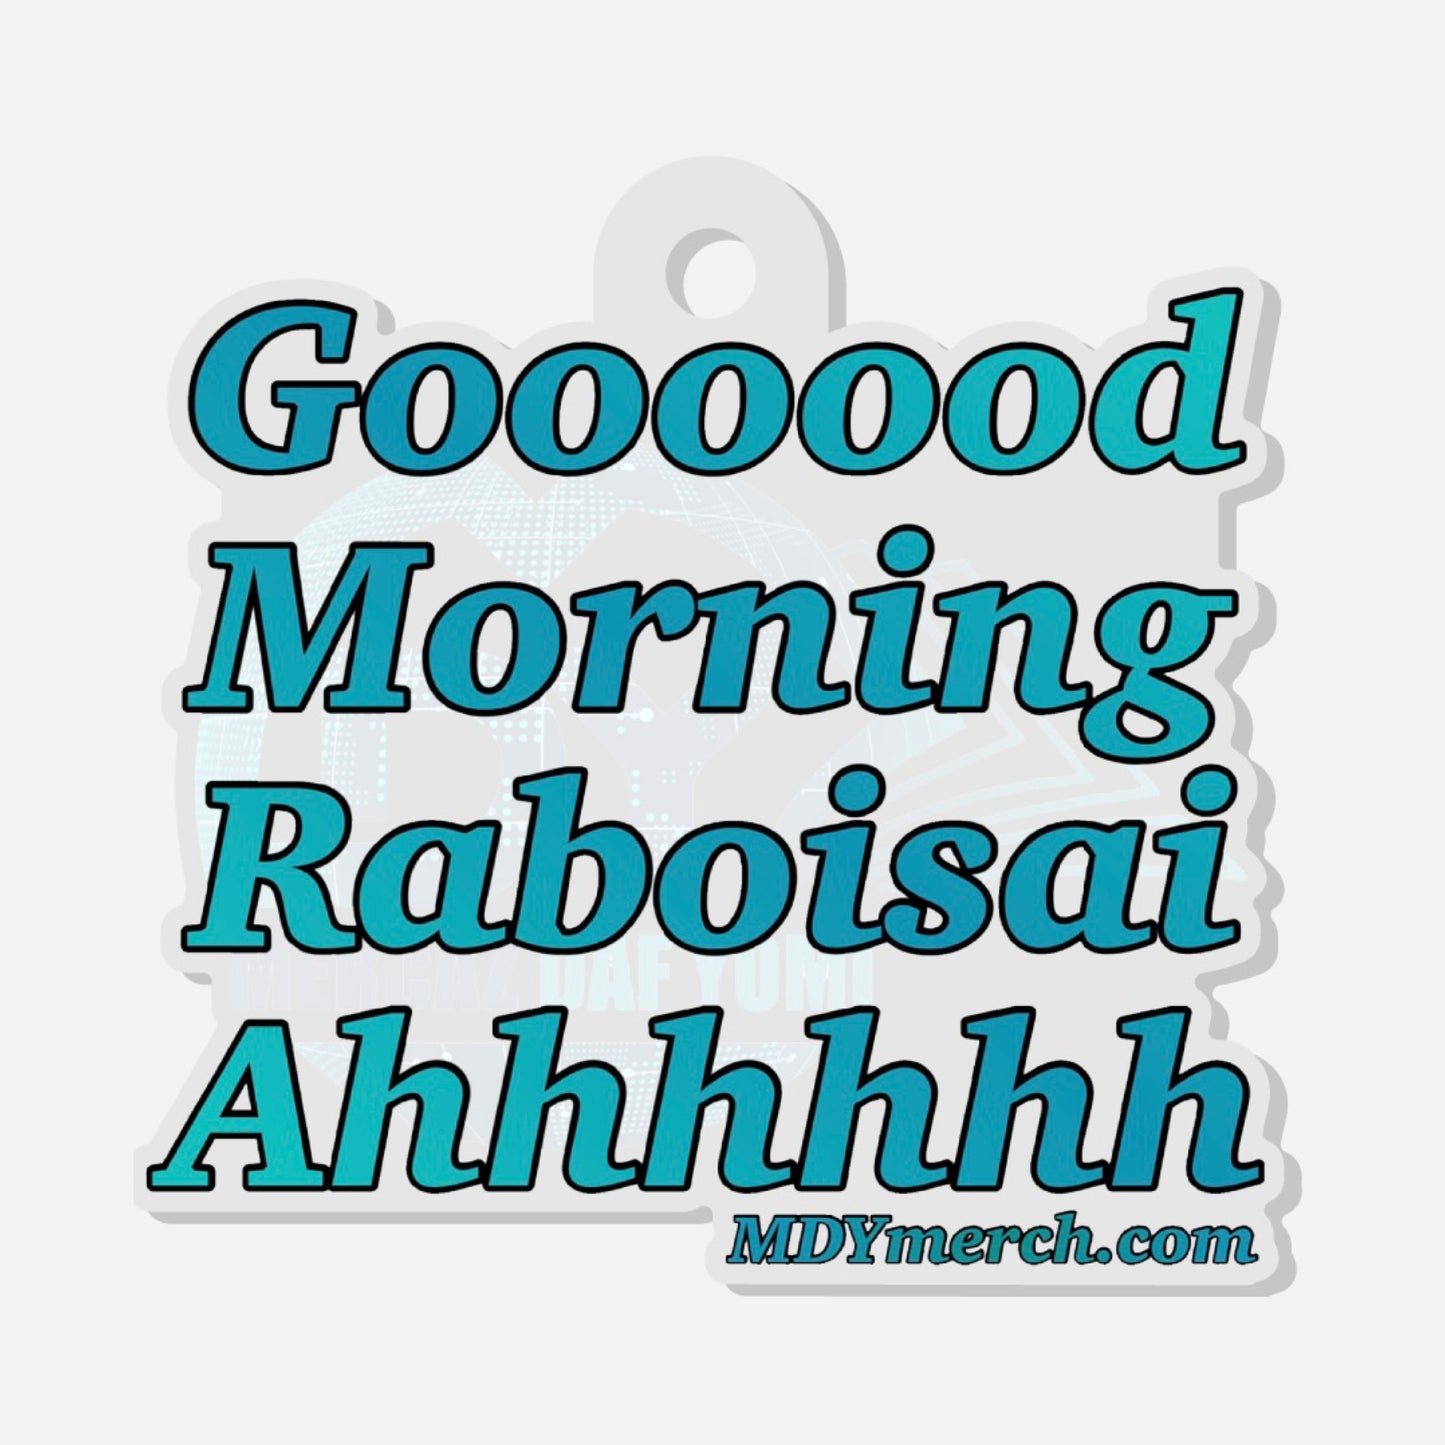 Mdy Gooood Morning Raboisai Ahhhh Acrylic keychain